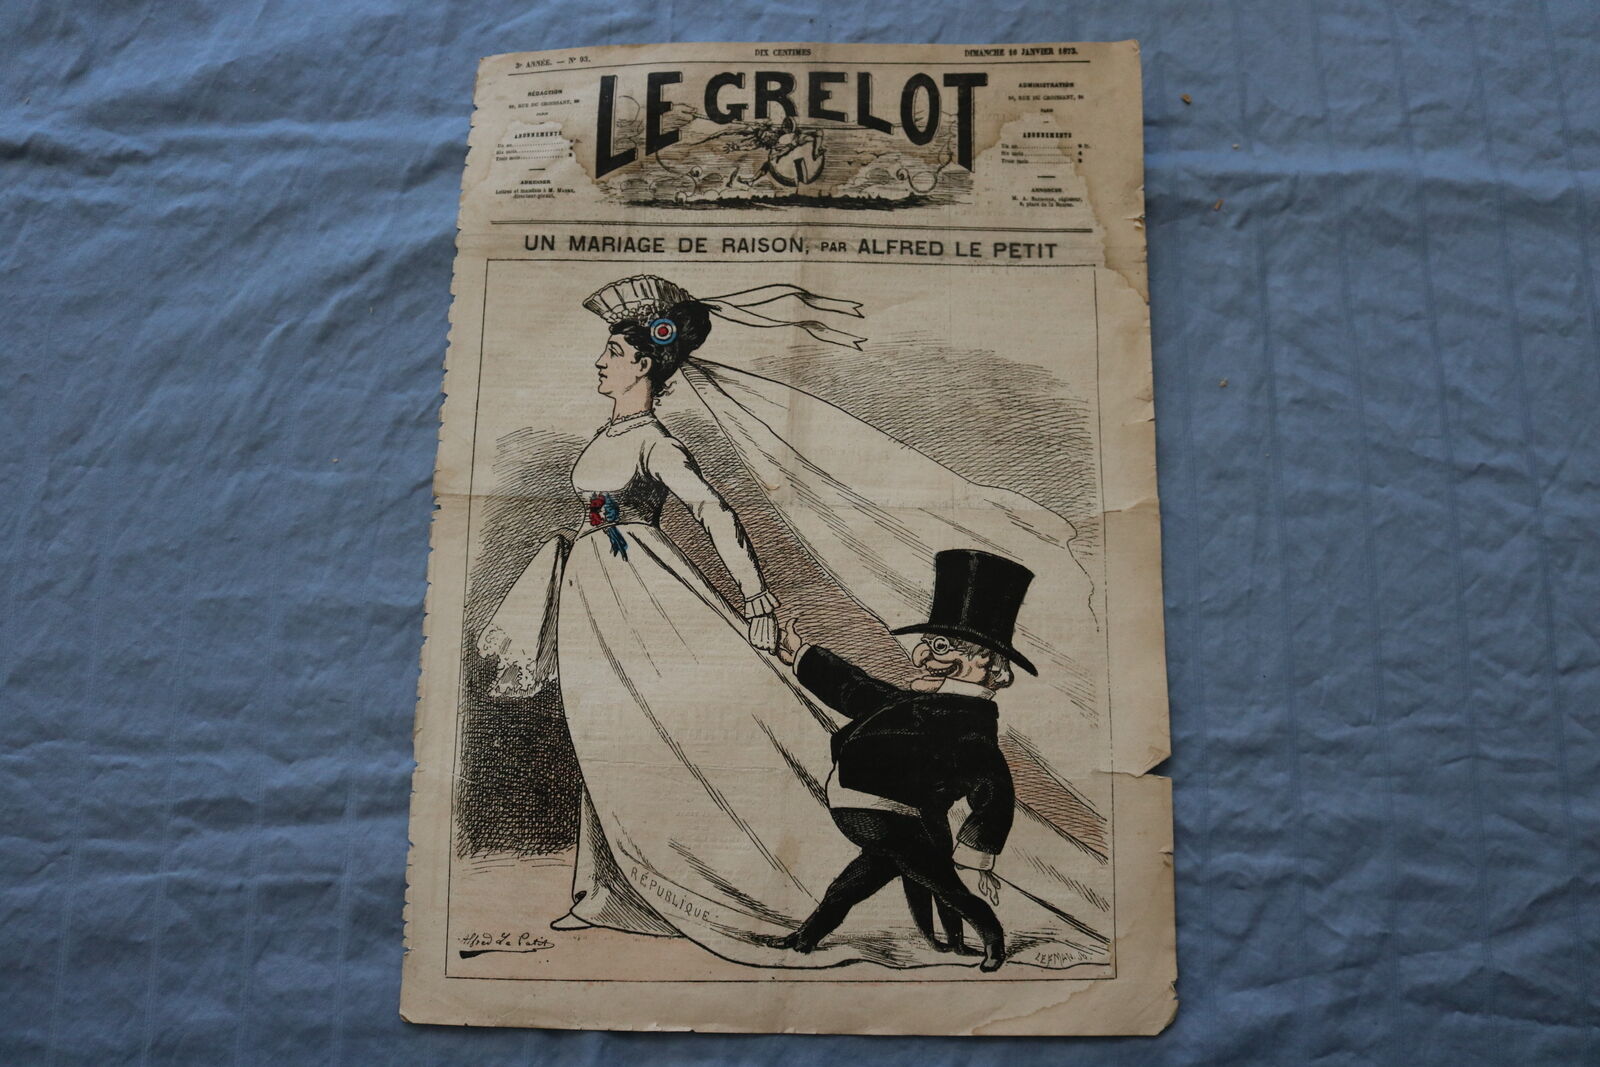 1873 JANUARY 16 LE GRELOT NEWSPAPER - UN MARIAGE DE RAISON - FRENCH - NP 8609